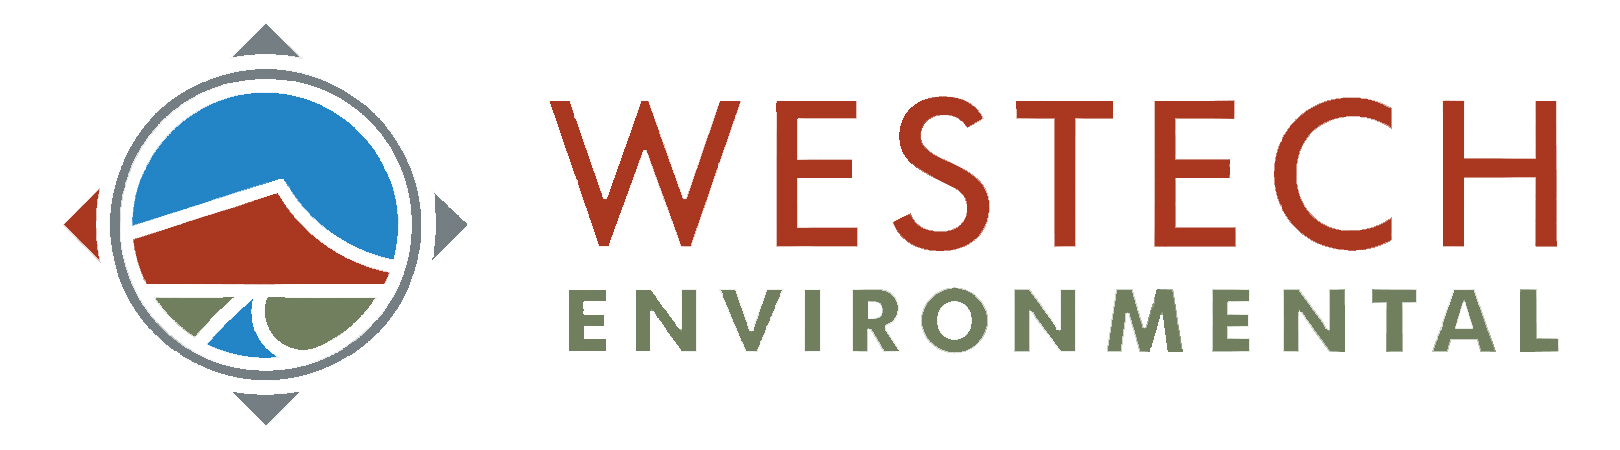 Westech Environmental Services Inc.